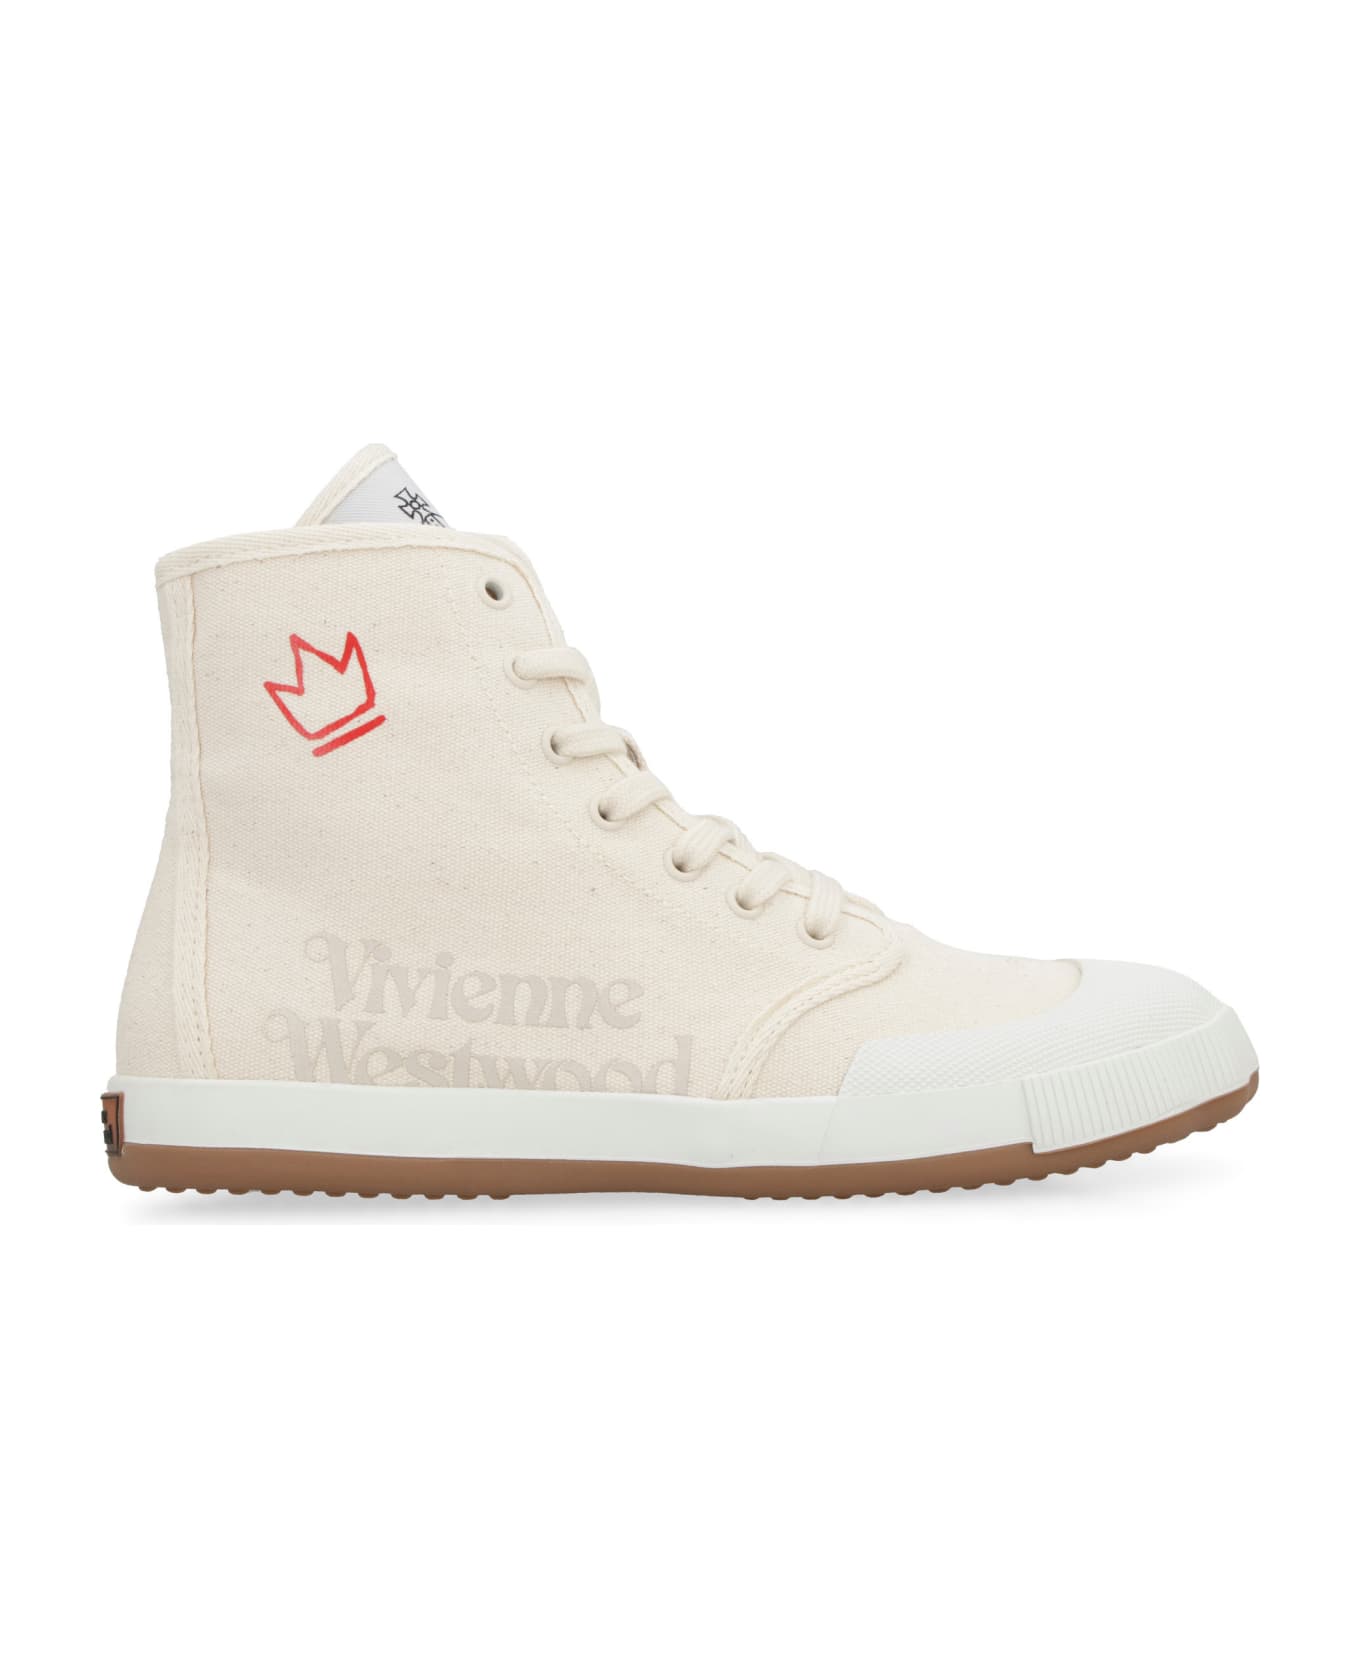 Vivienne Westwood Animal Gym Canvas High-top Sneakers - skin スニーカー